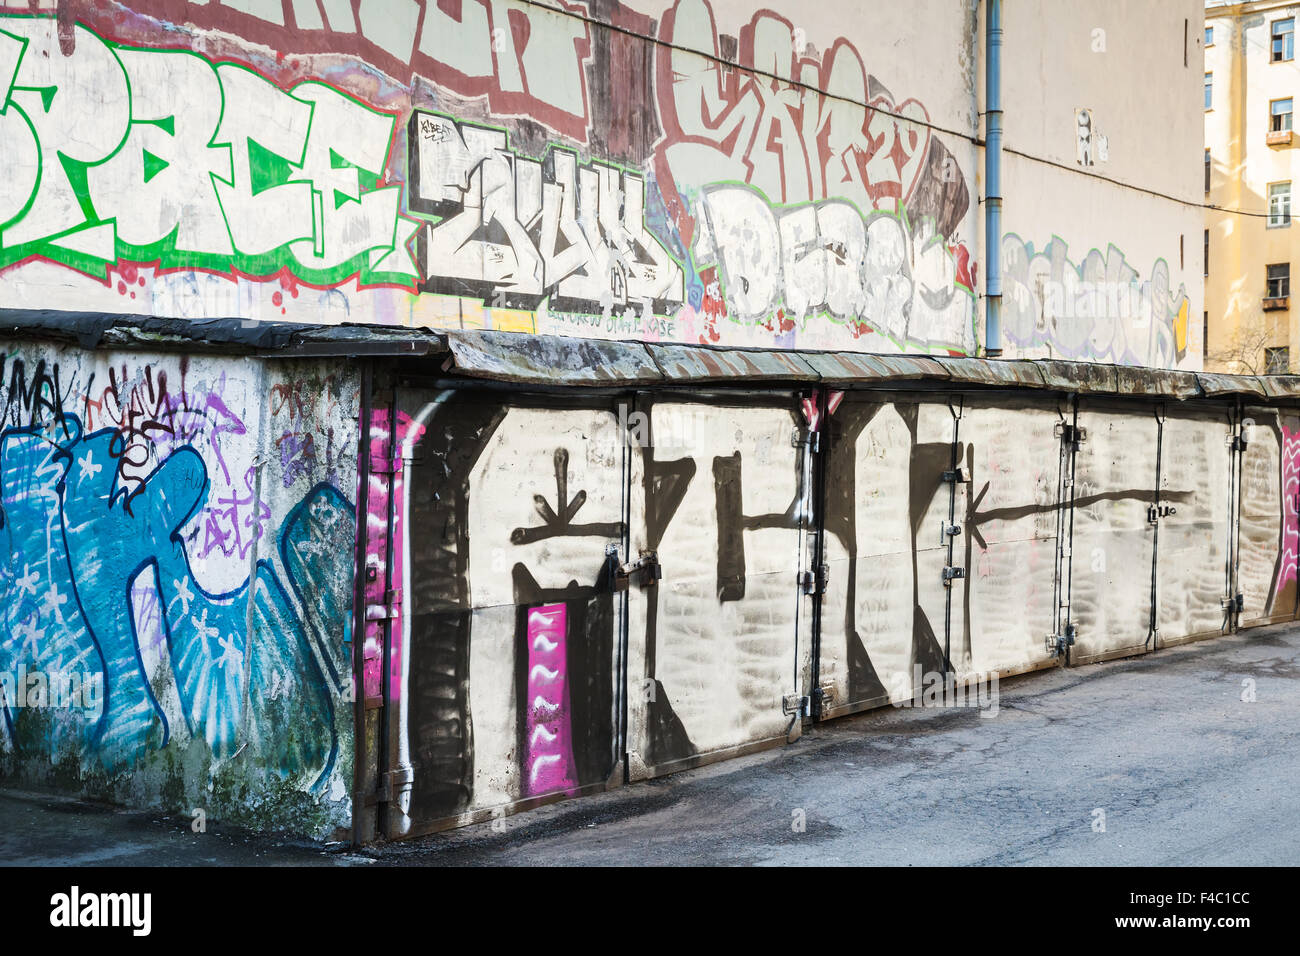 San Pietroburgo, Russia - 6 Maggio 2015: street art, garages con grungy graffiti. Isola Vasilievsky, Centrale parte vecchia di San Pe Foto Stock